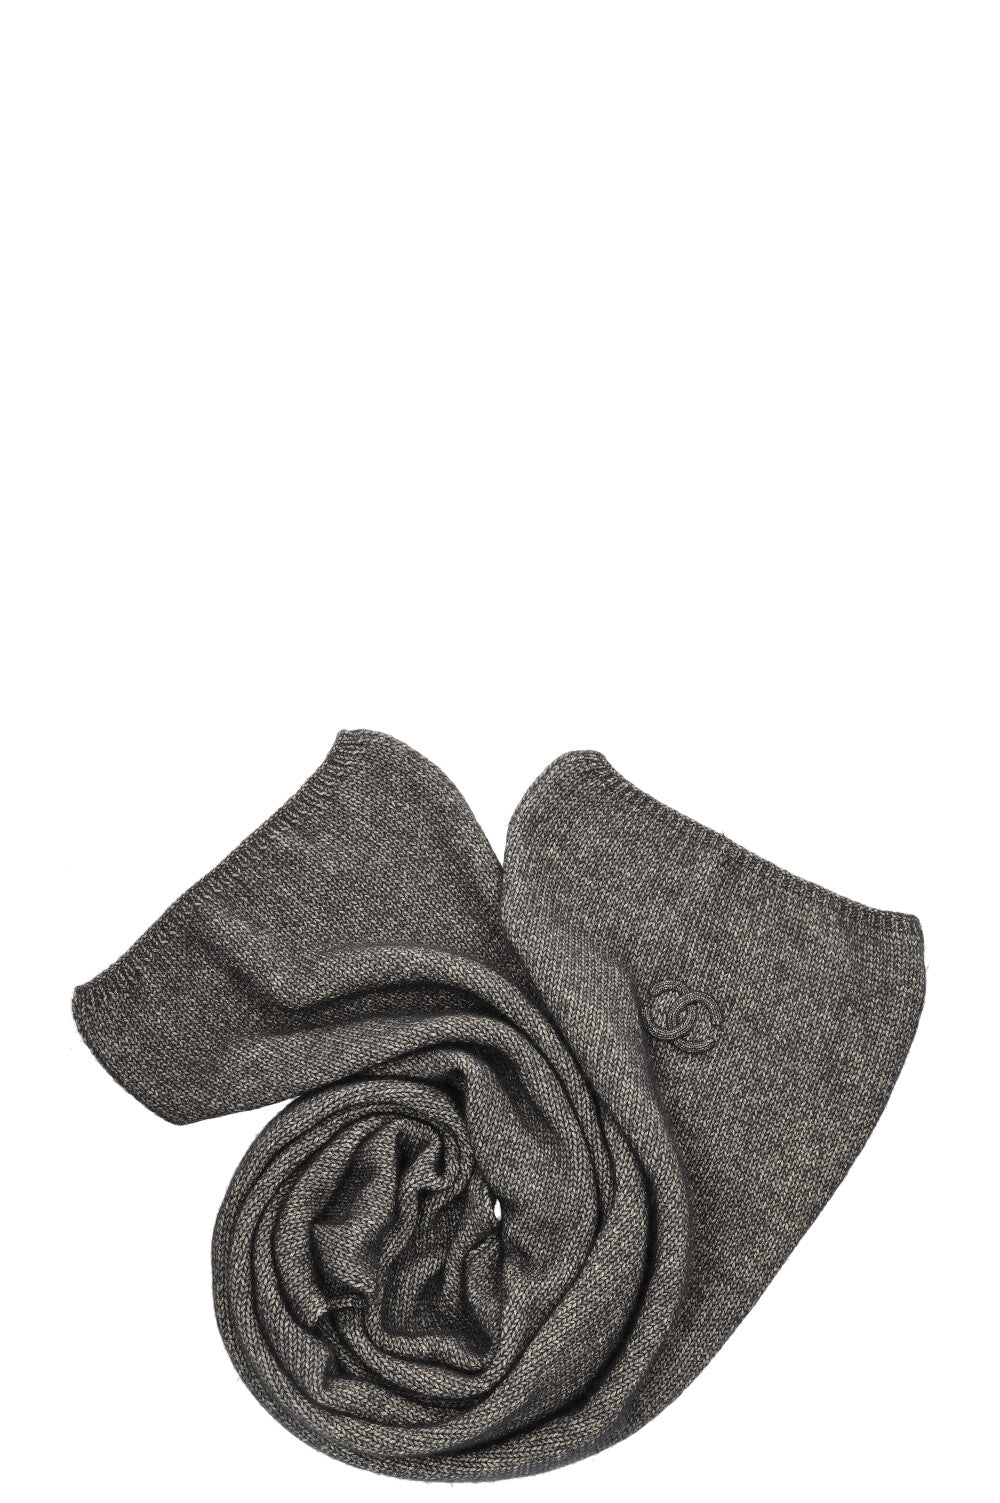 CHANEL Knit Logo Scarf Black Grey Gold